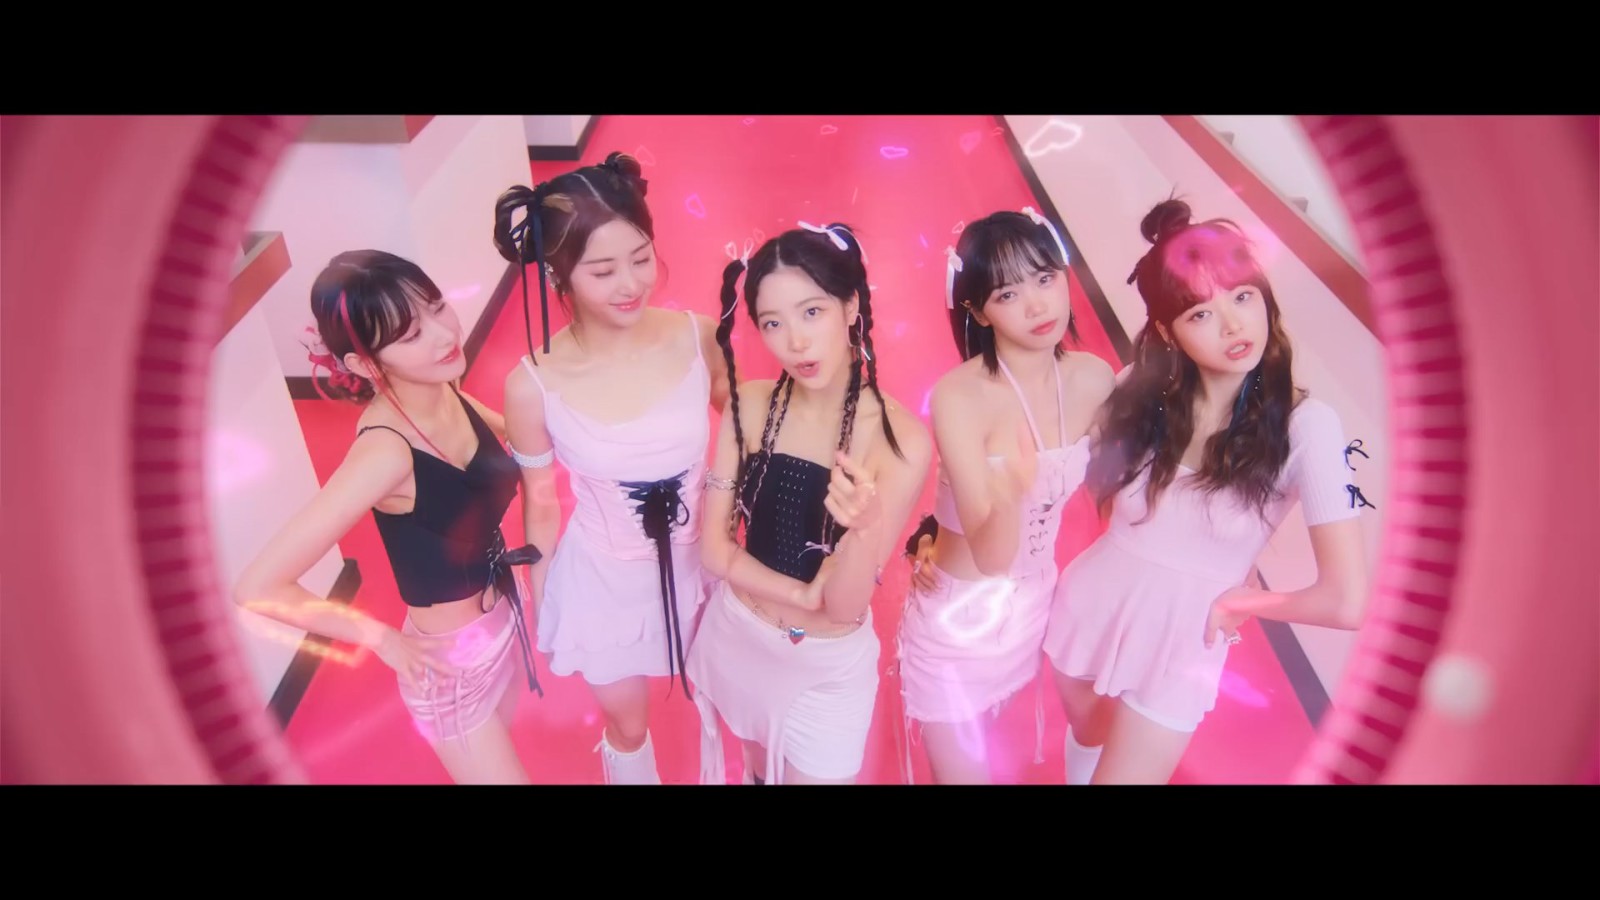 《守望先锋2》联动LE SSERAFIM女团单曲MV发布 新联动皮肤即将上线